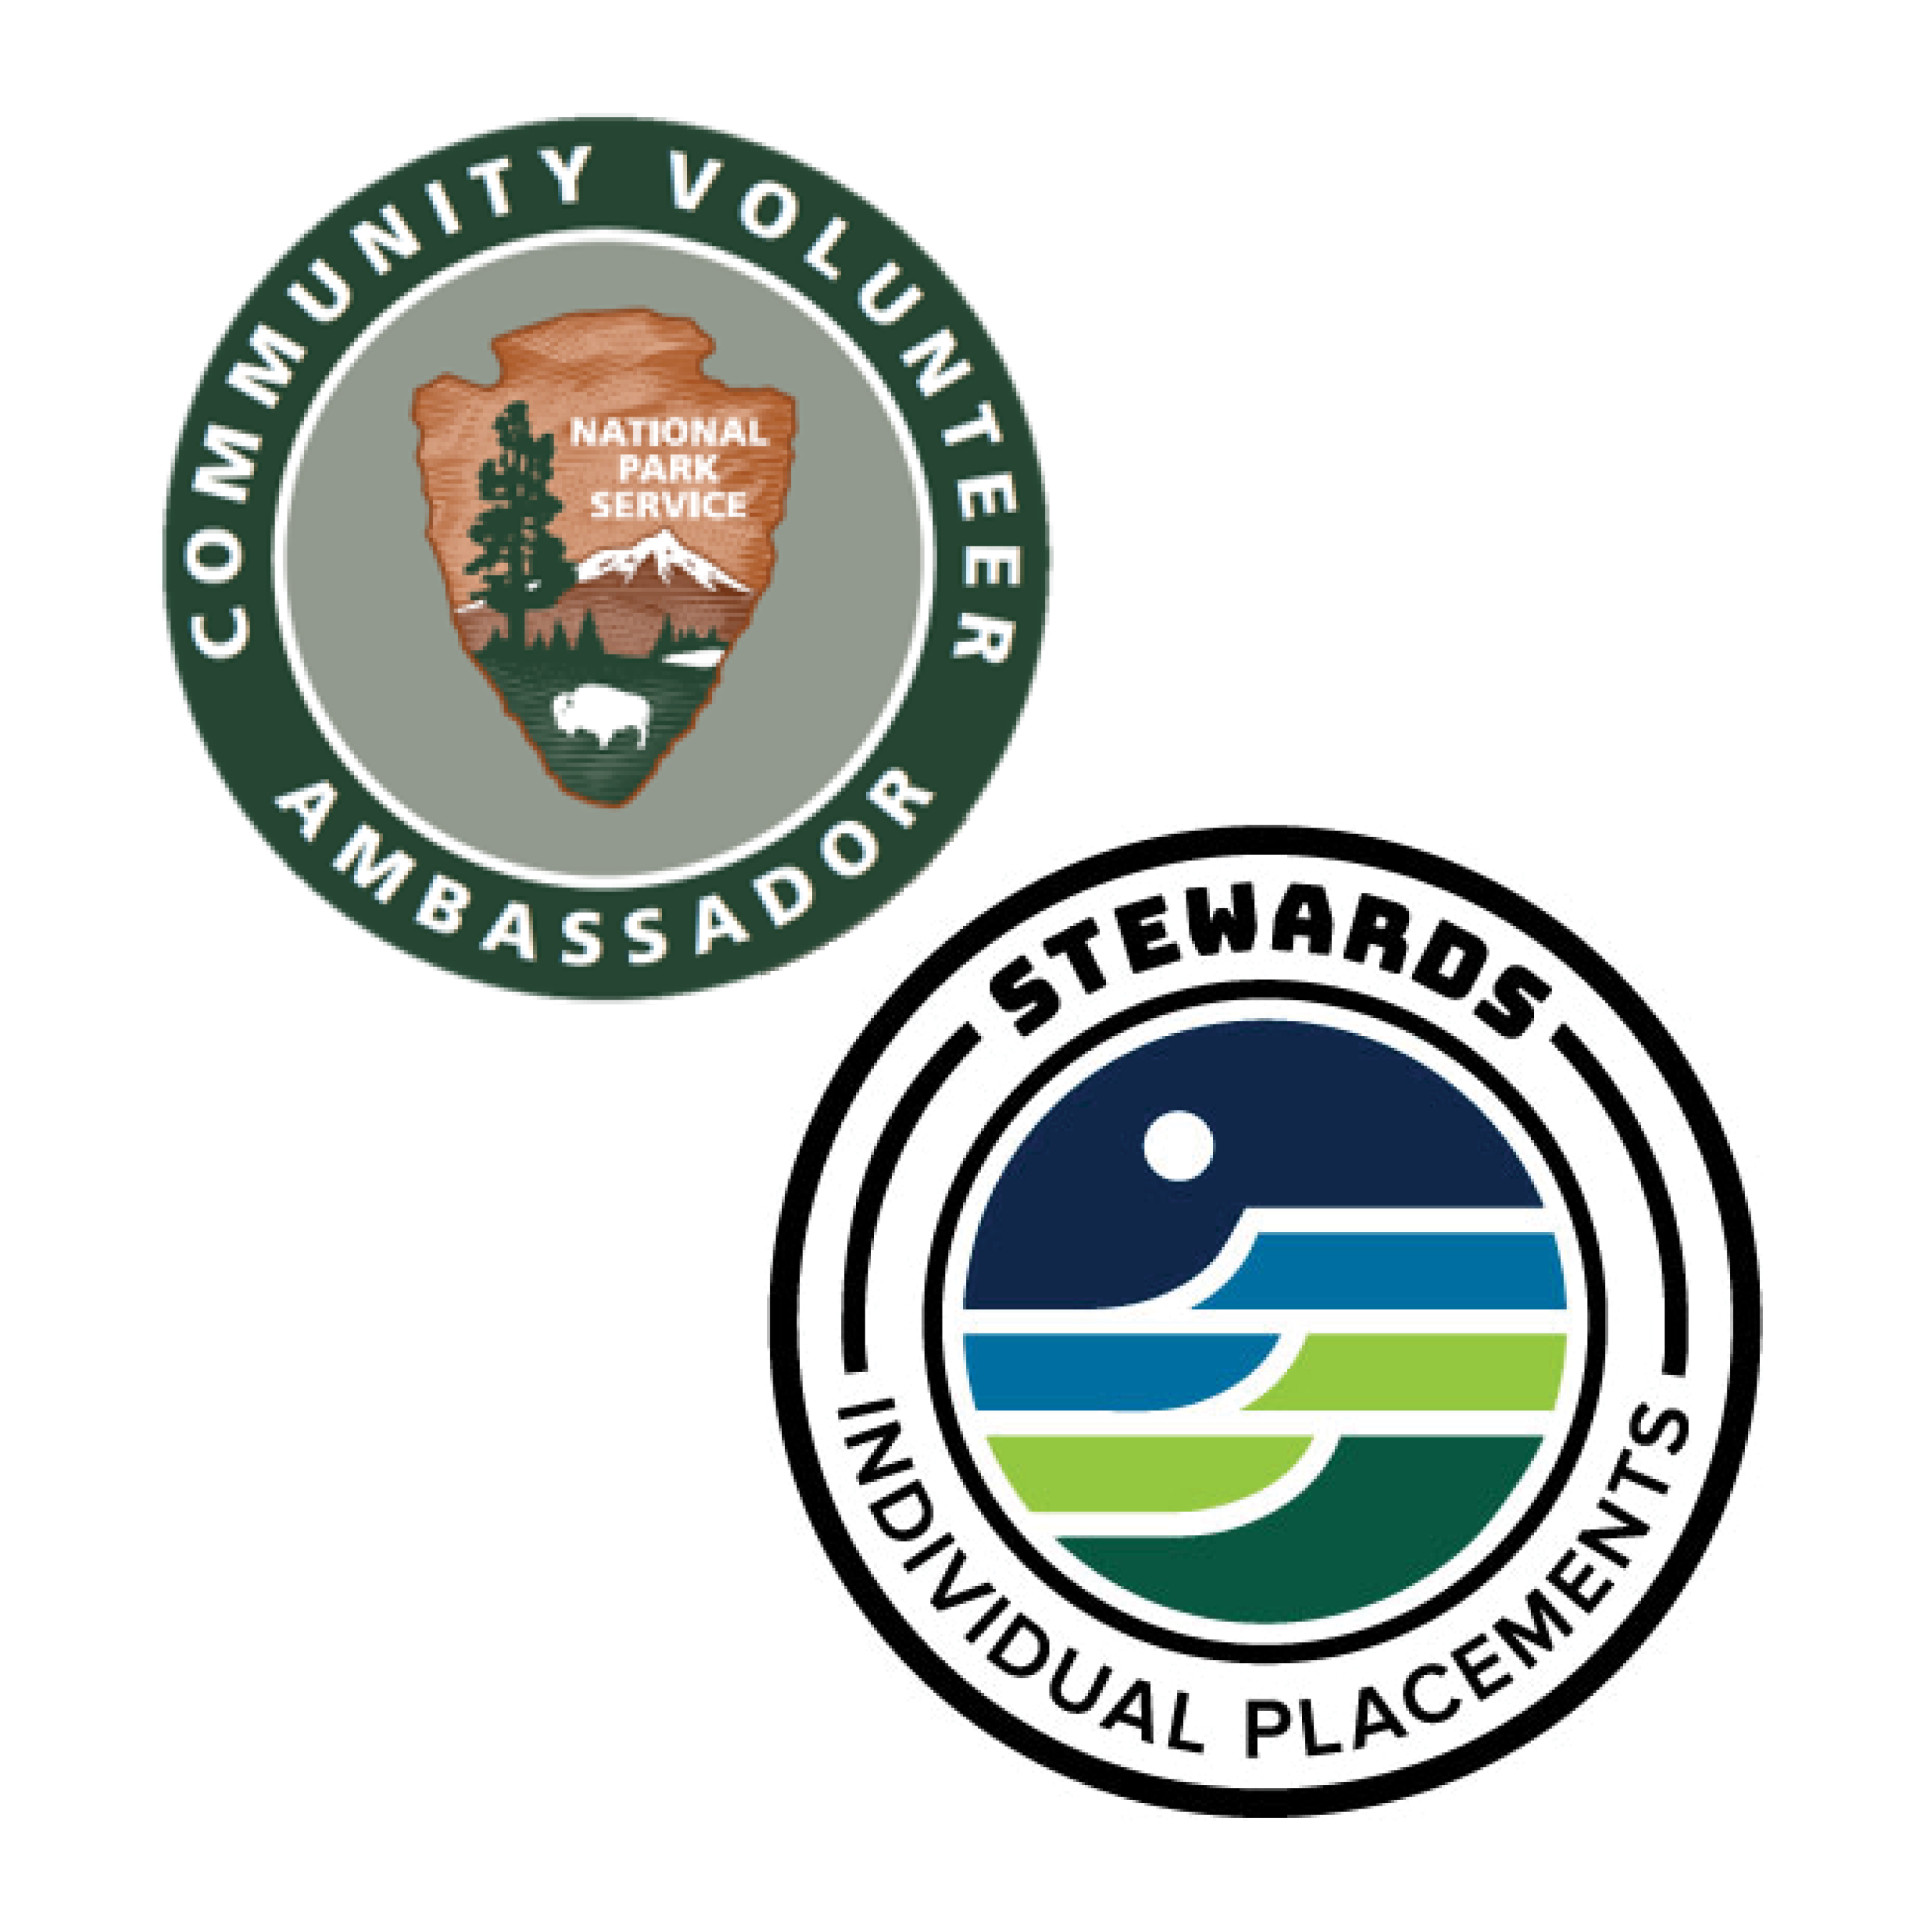 CVA and Stewards Individual Placements Logos